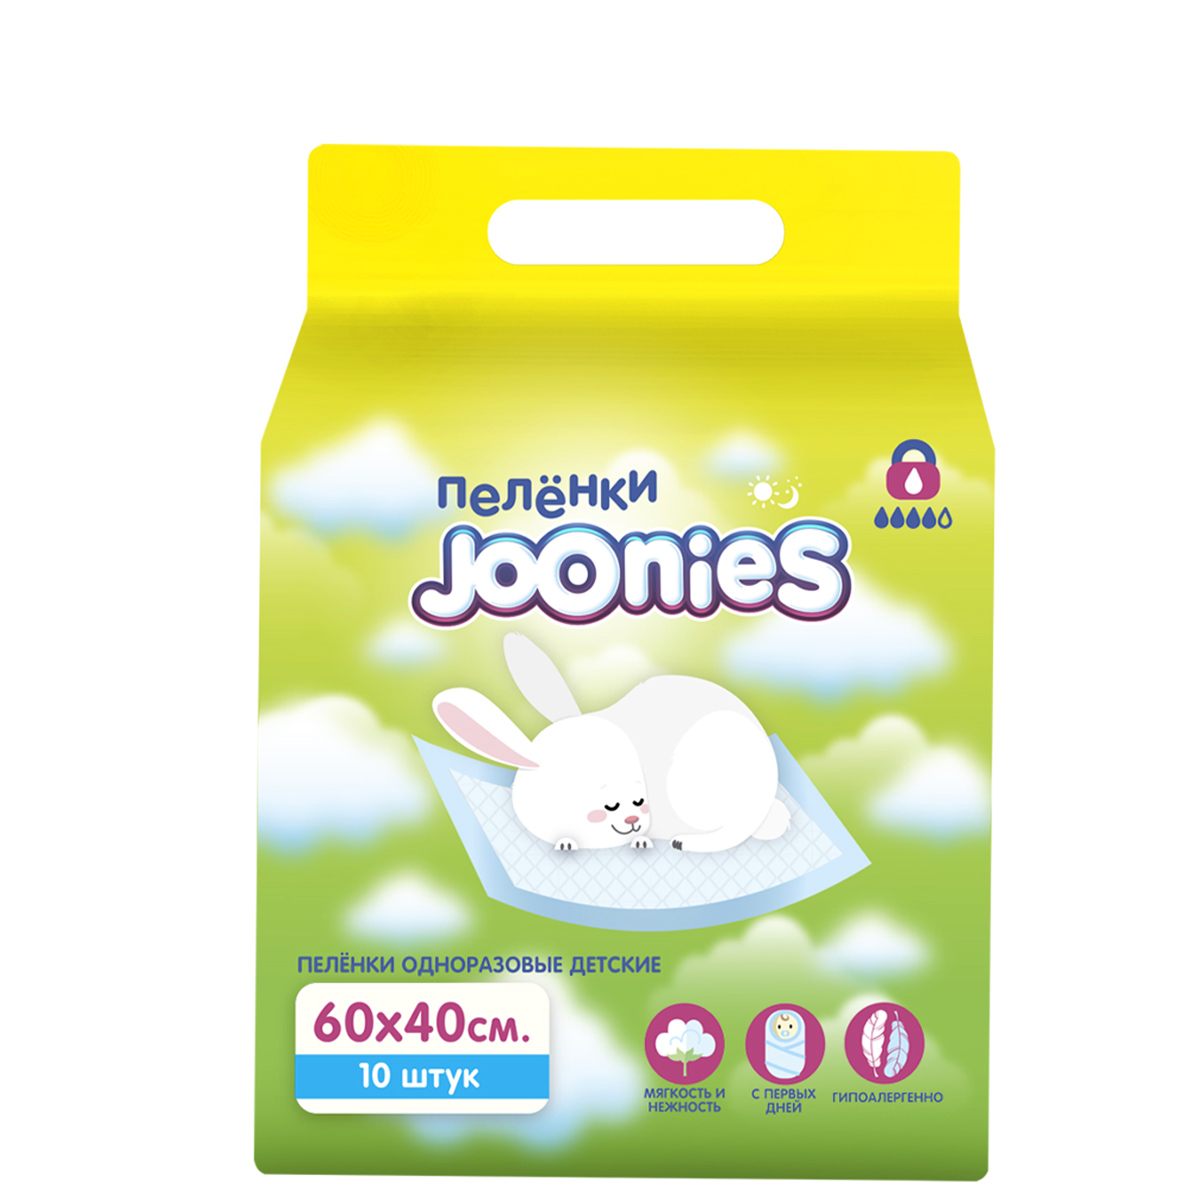 Joonies Детские одноразовые пеленки 60 х 40, 10 шт (Joonies,